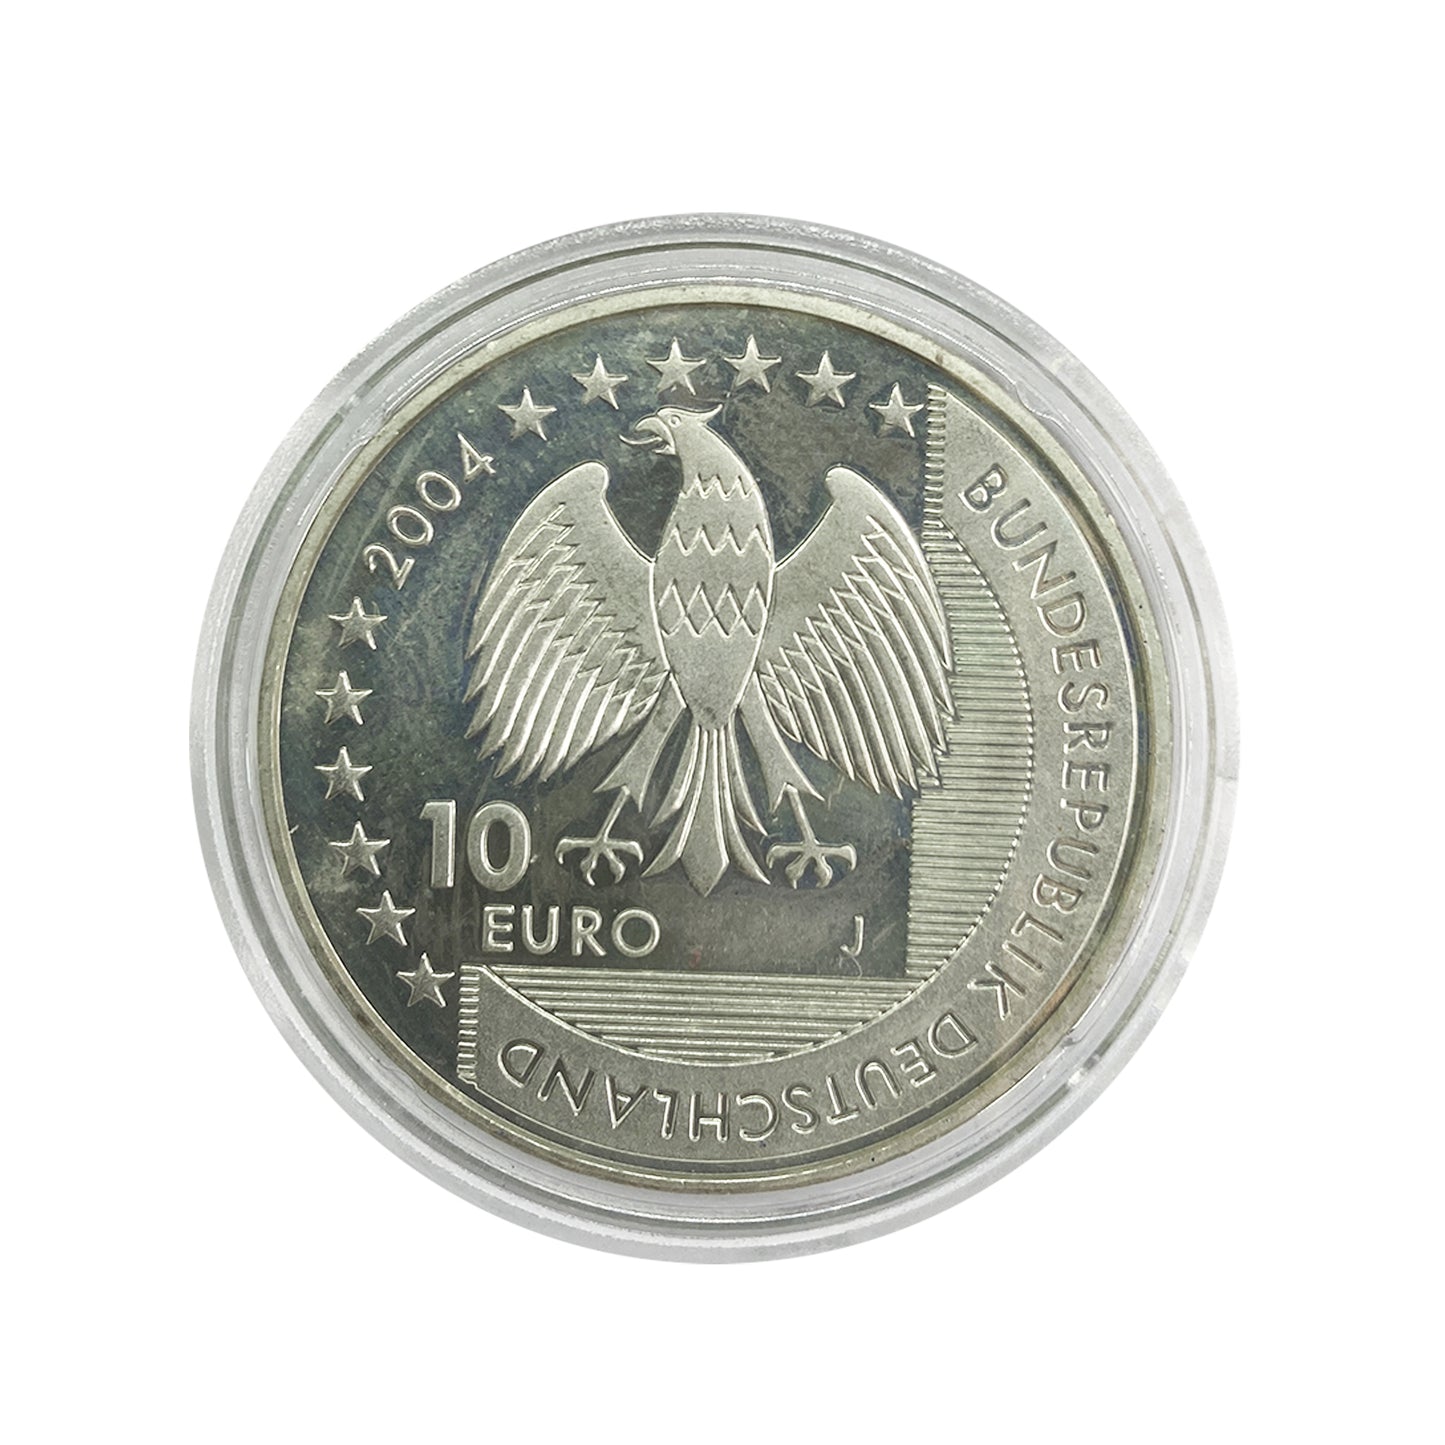 Alemania - Moneda 10 euros plata 2004 -Parque nacional Wattenmeer